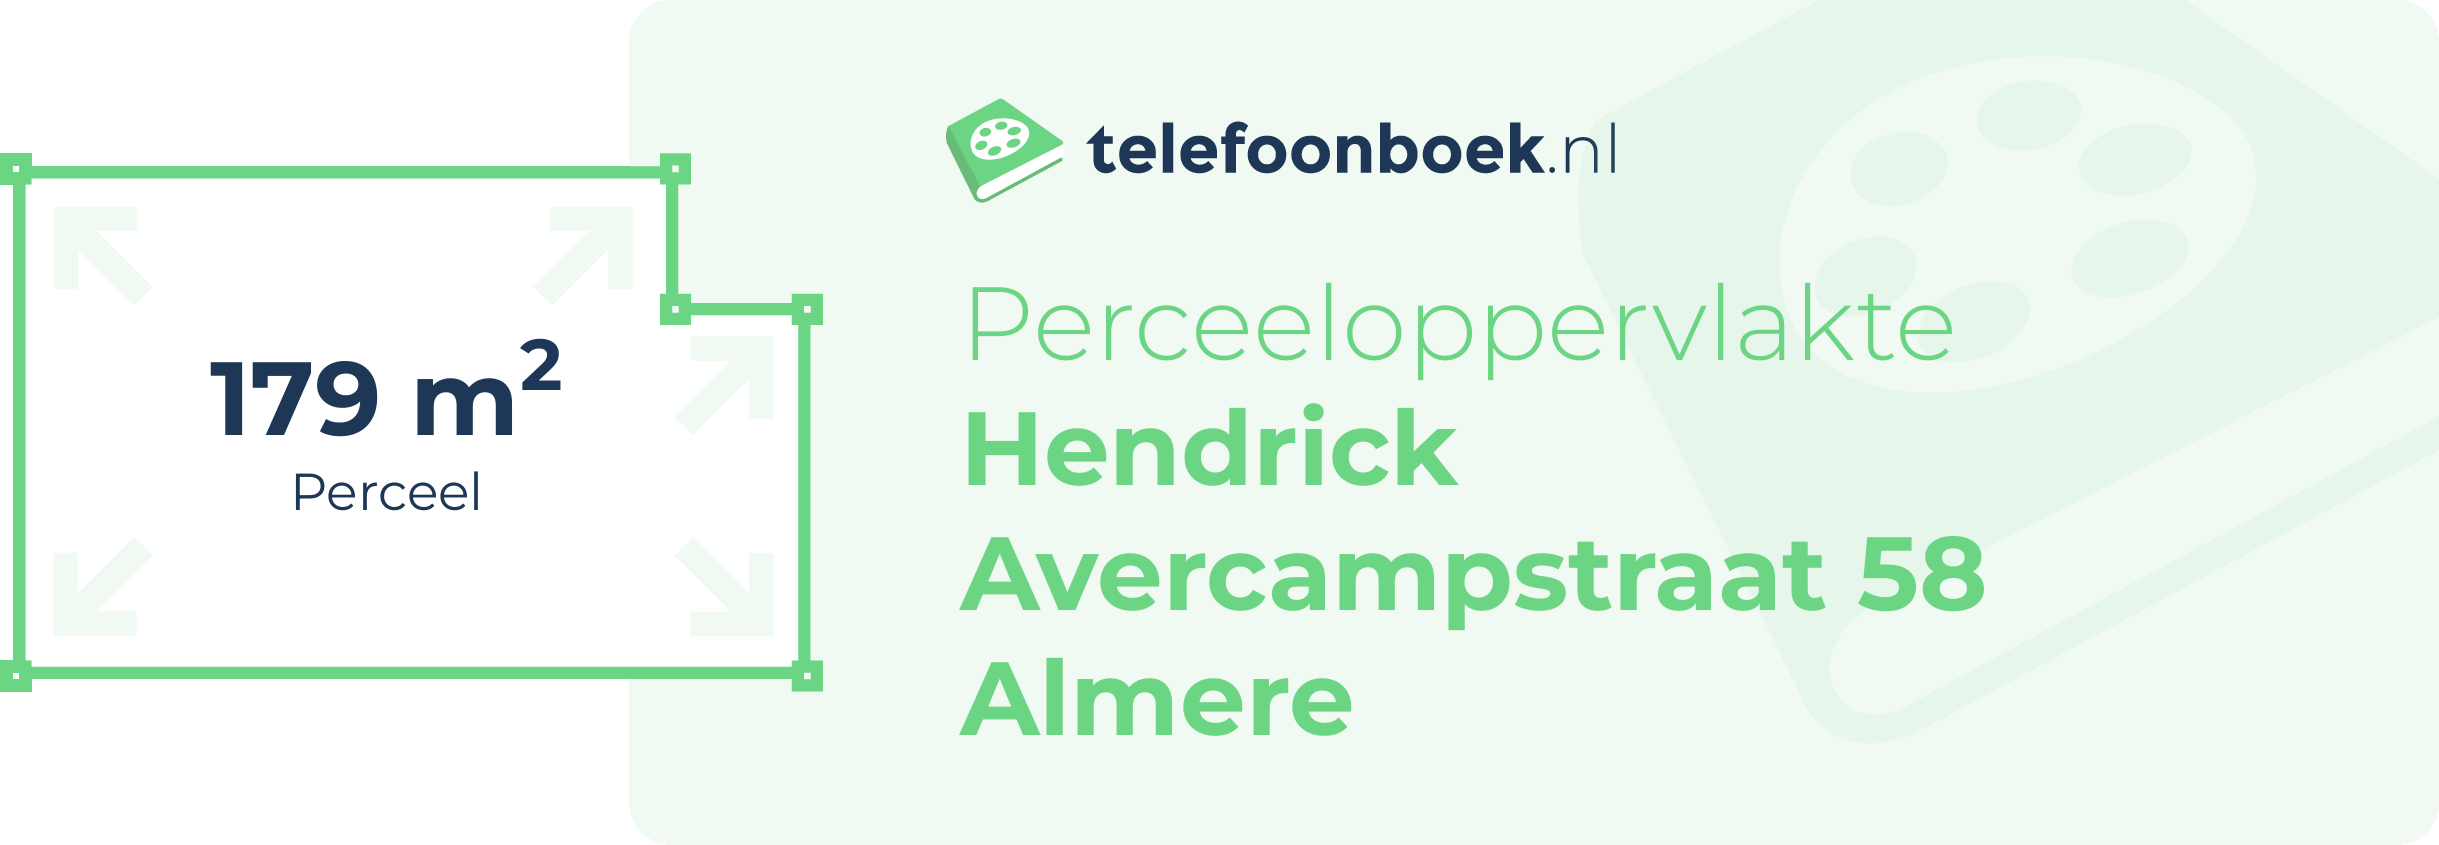 Perceeloppervlakte Hendrick Avercampstraat 58 Almere